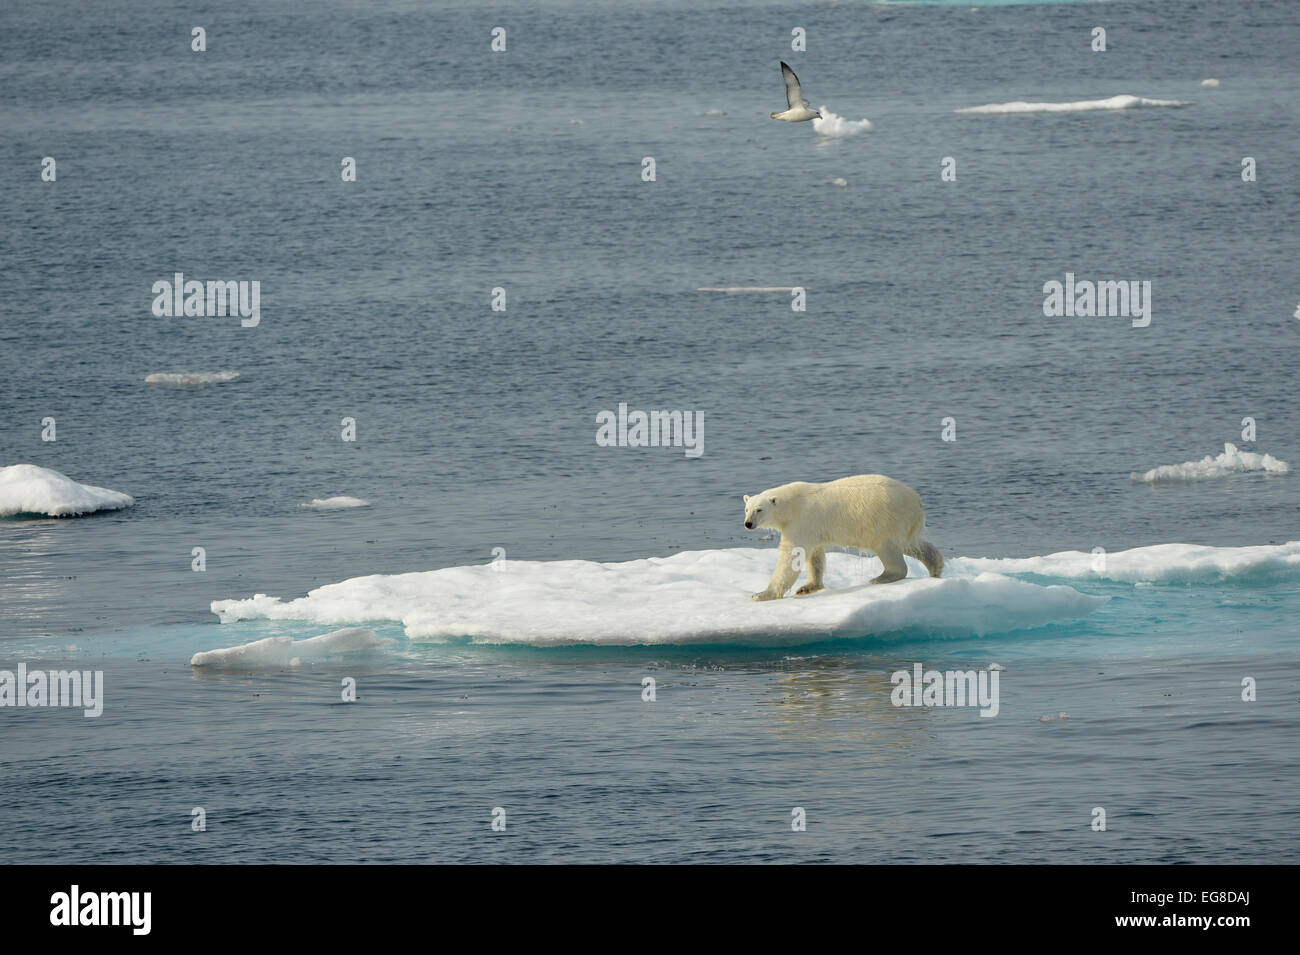 L'ours polaire (Ursus maritimus) debout sur la banquise, au large de l'île de Baffin, au Canada, en août Banque D'Images